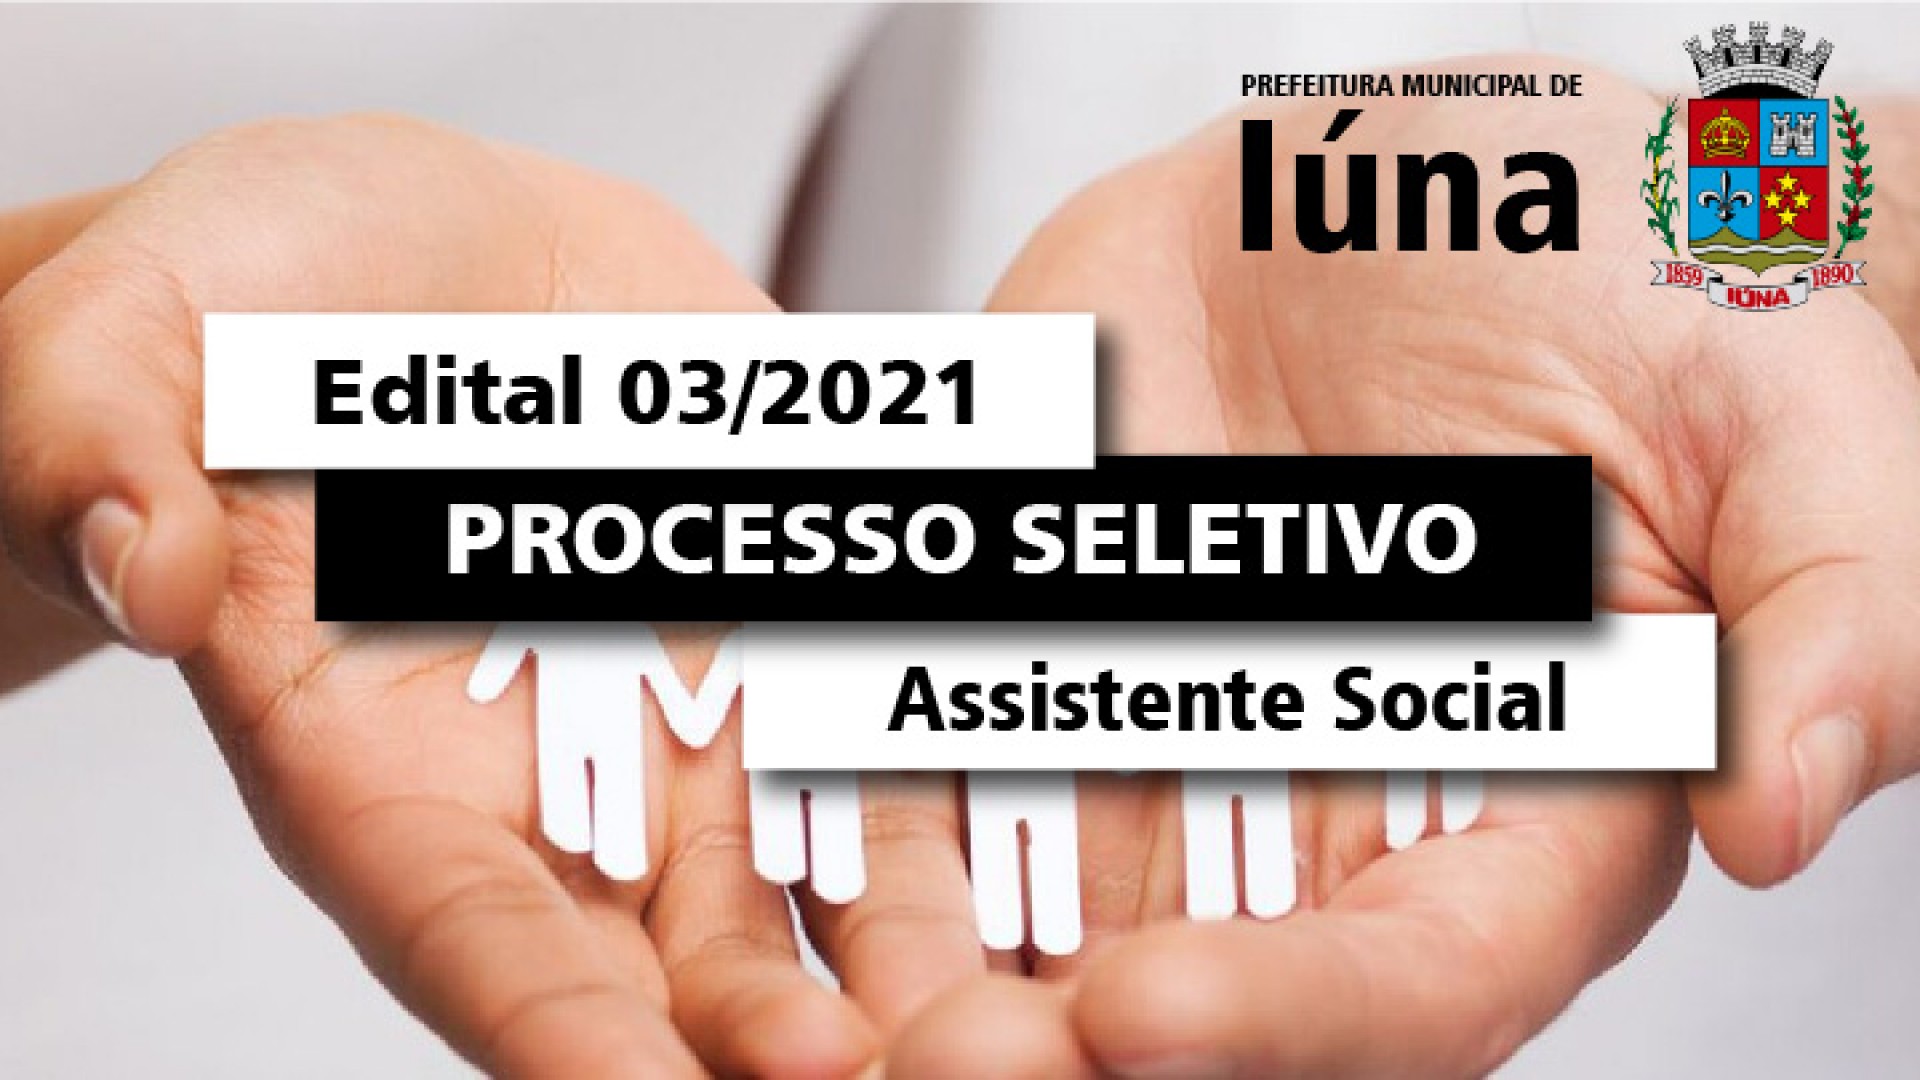 Processo Seletivo 03/2021 - Assistente Social